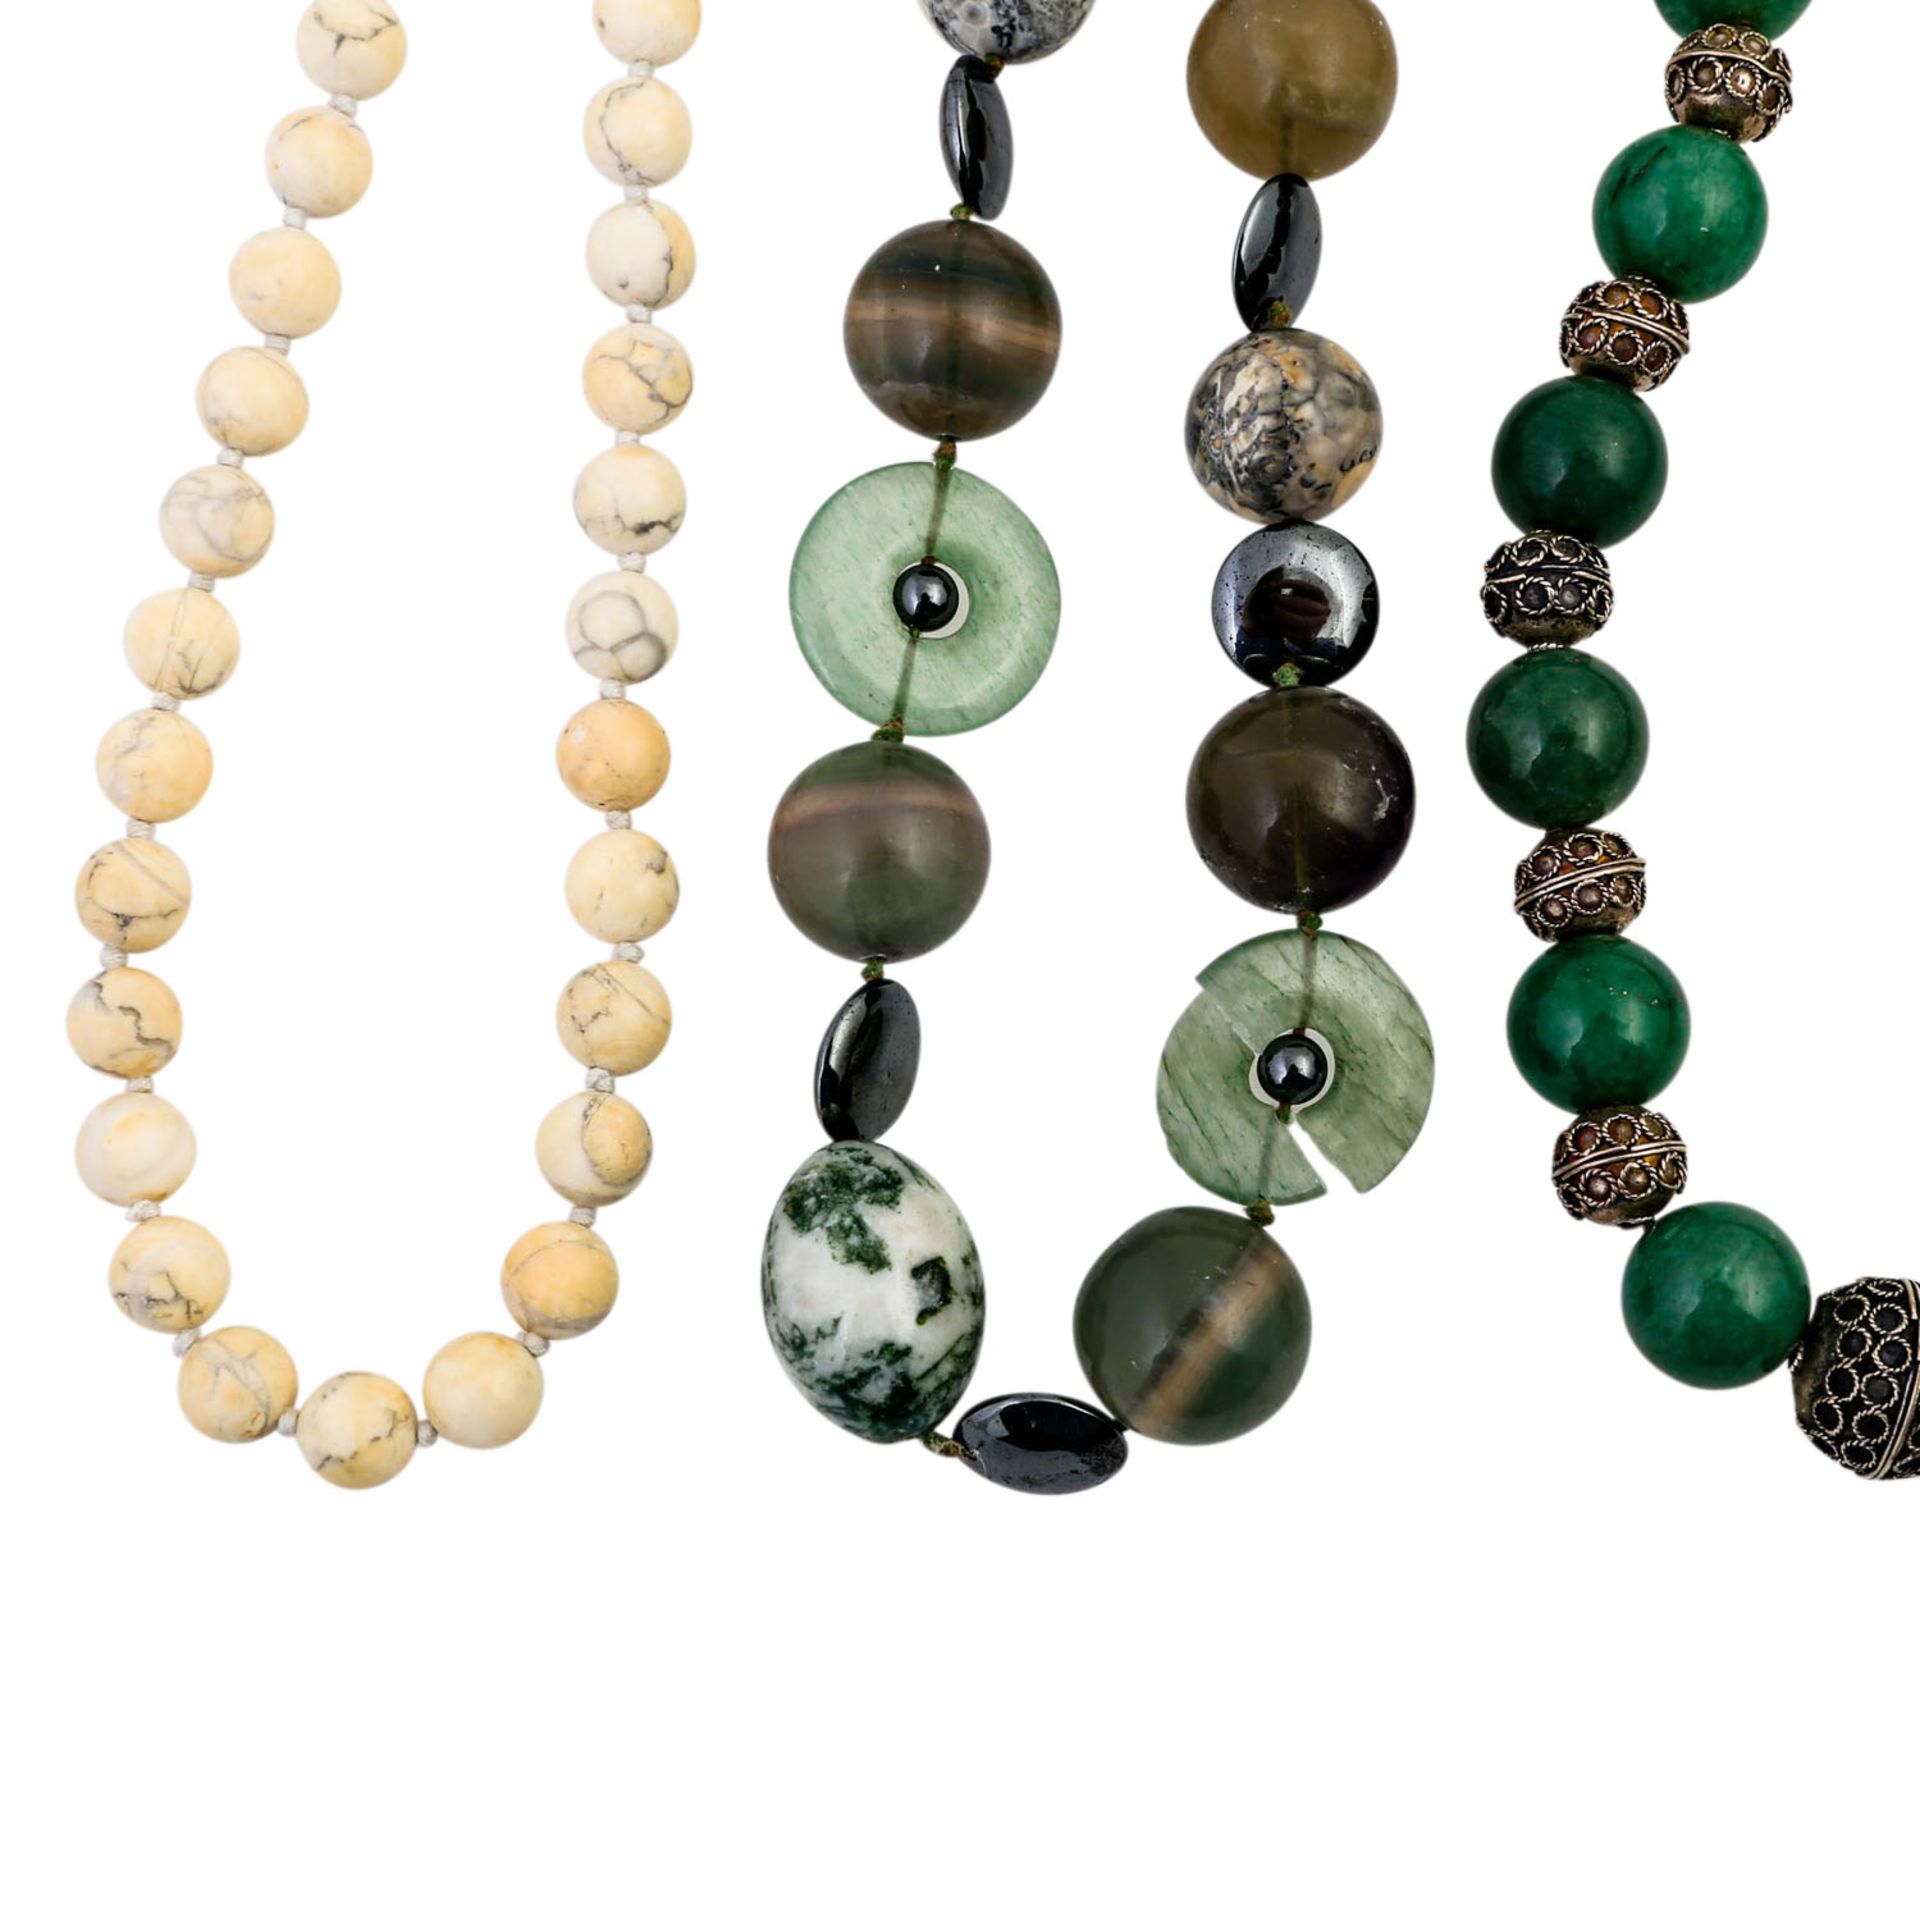 10-teiliges Konvolut Steinketten, best. aus 7 Ketten und 3 Armbändern, u. a. Türkis, - Image 3 of 5